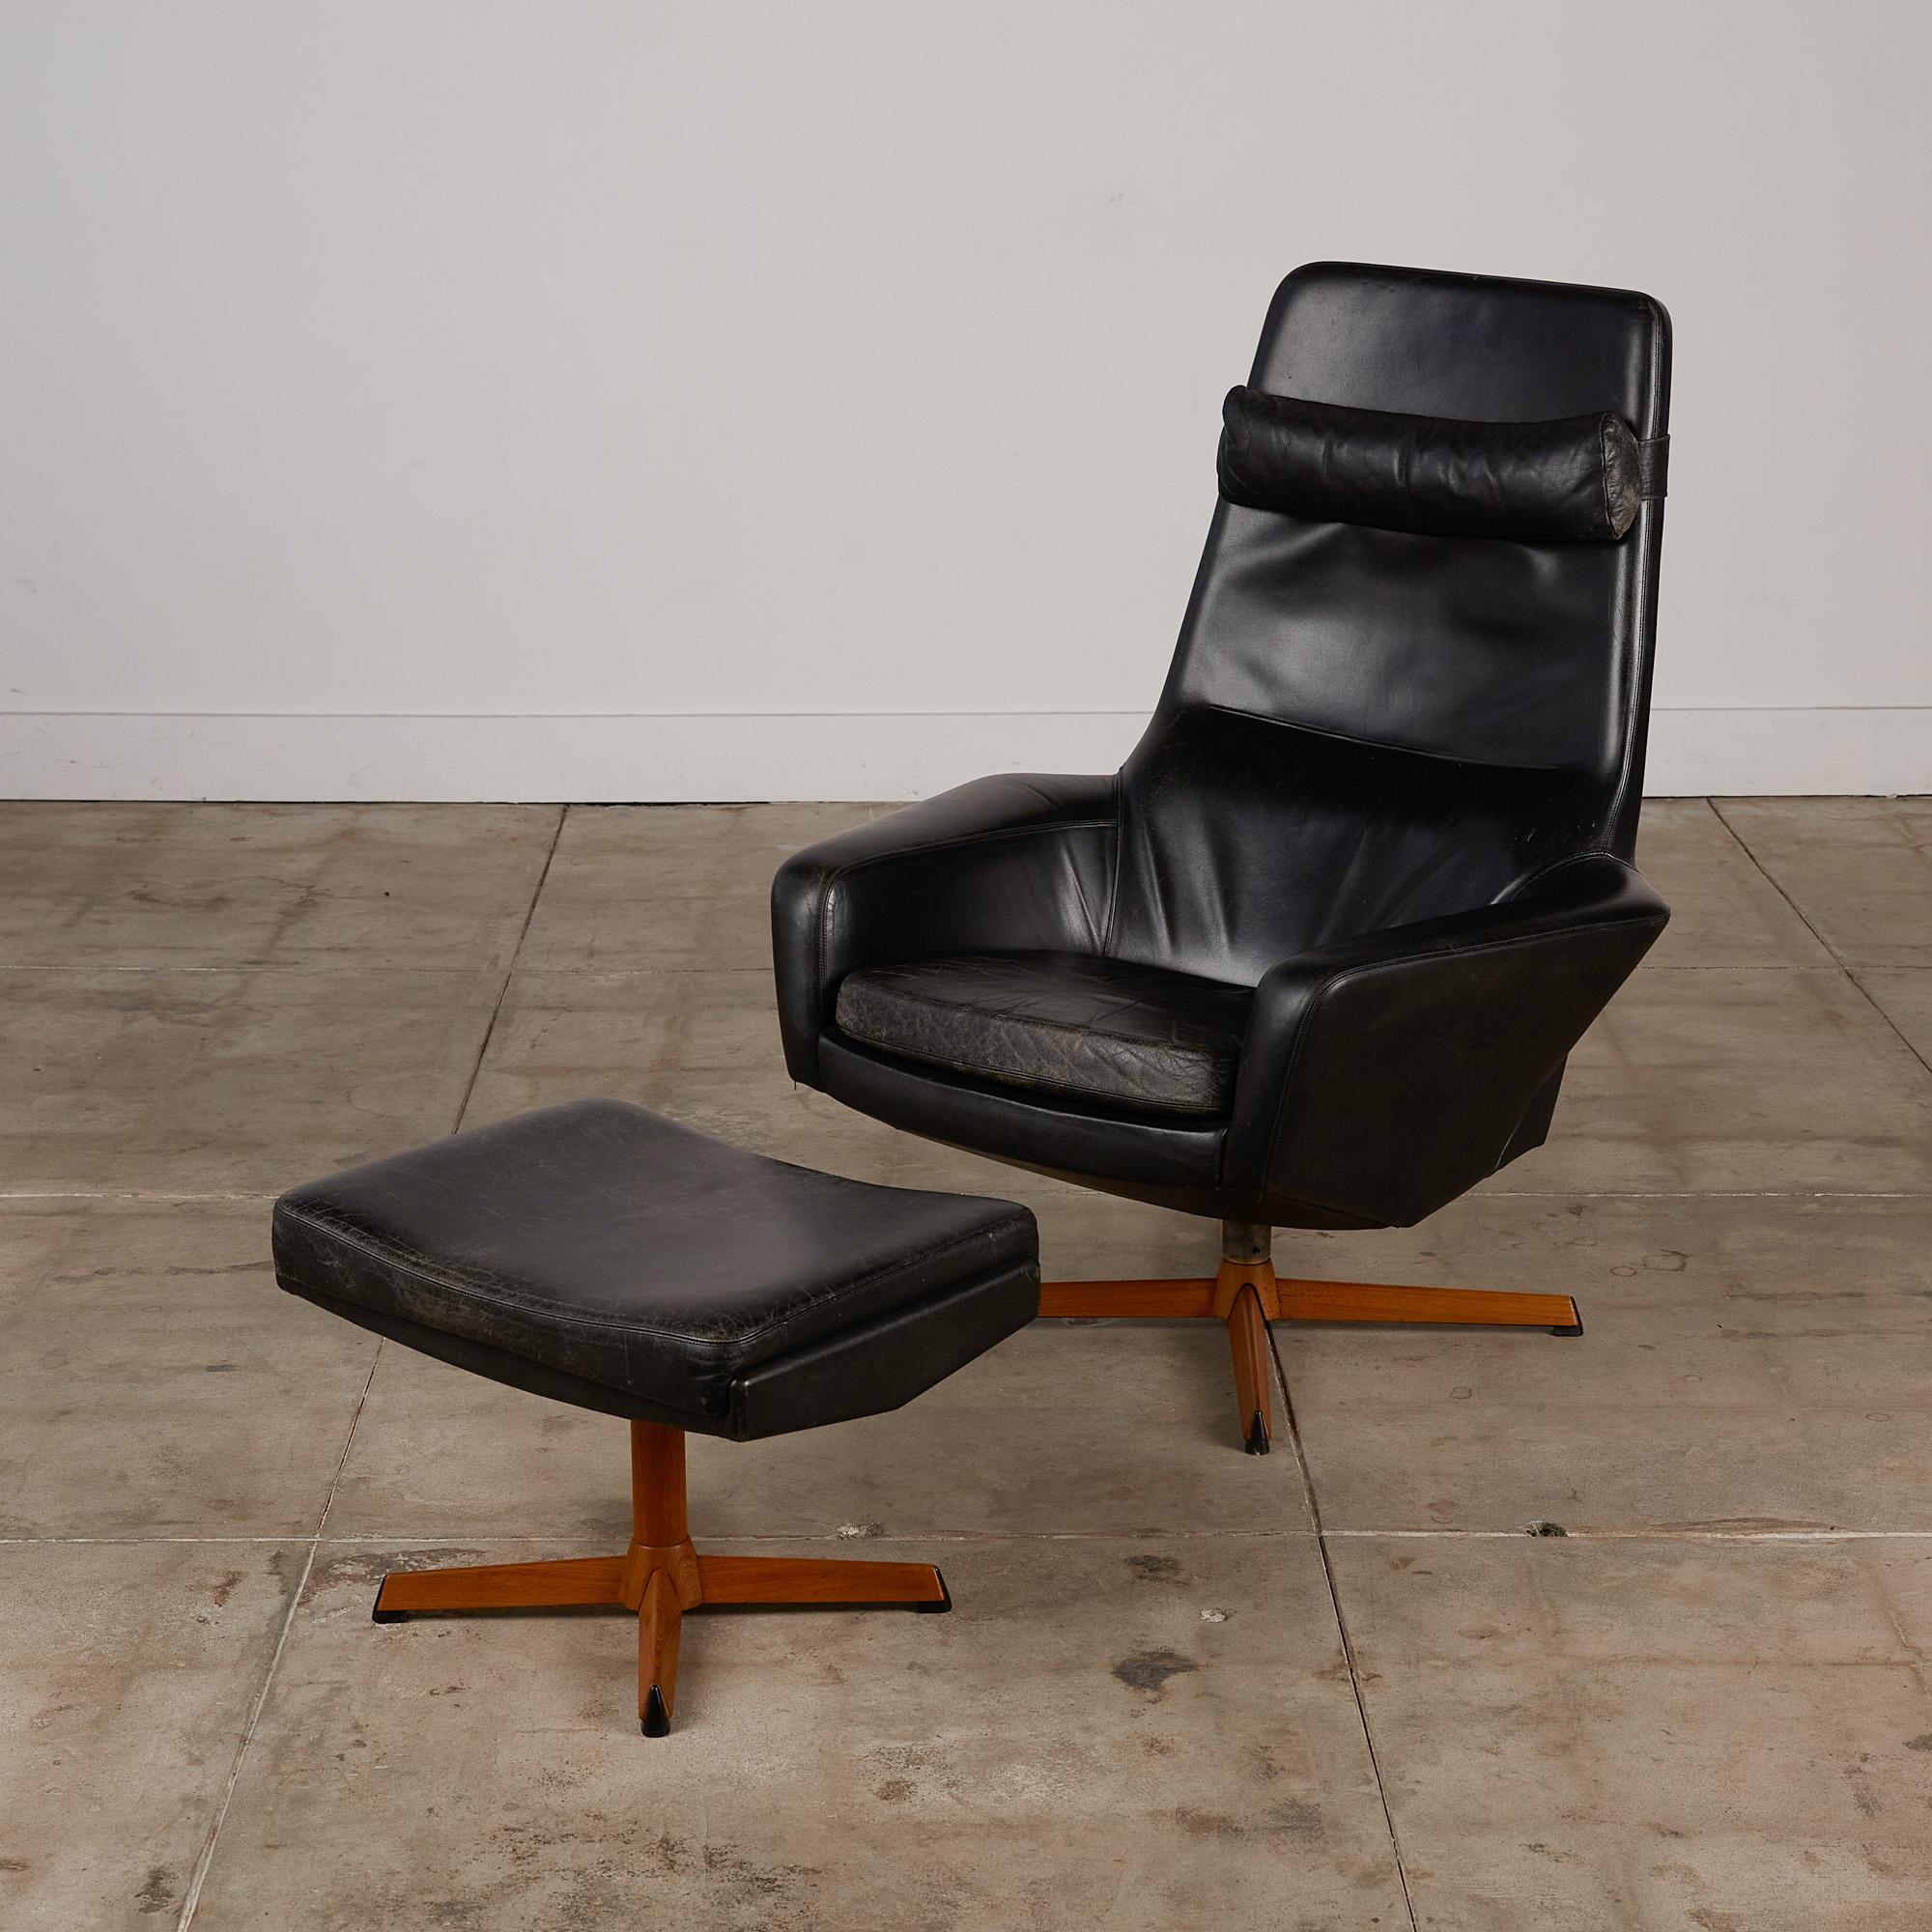 Loungesessel mit Ottomane von Ib Madsen für Madsen & Schübell, Dänemark, ca. 1950er Jahre. Sessel und Ottomane sind mit schwarzem Leder bezogen und lassen sich in mehreren Stufen bequem verstellen. Es gibt ein abnehmbares Nackenkissen, das ebenfalls